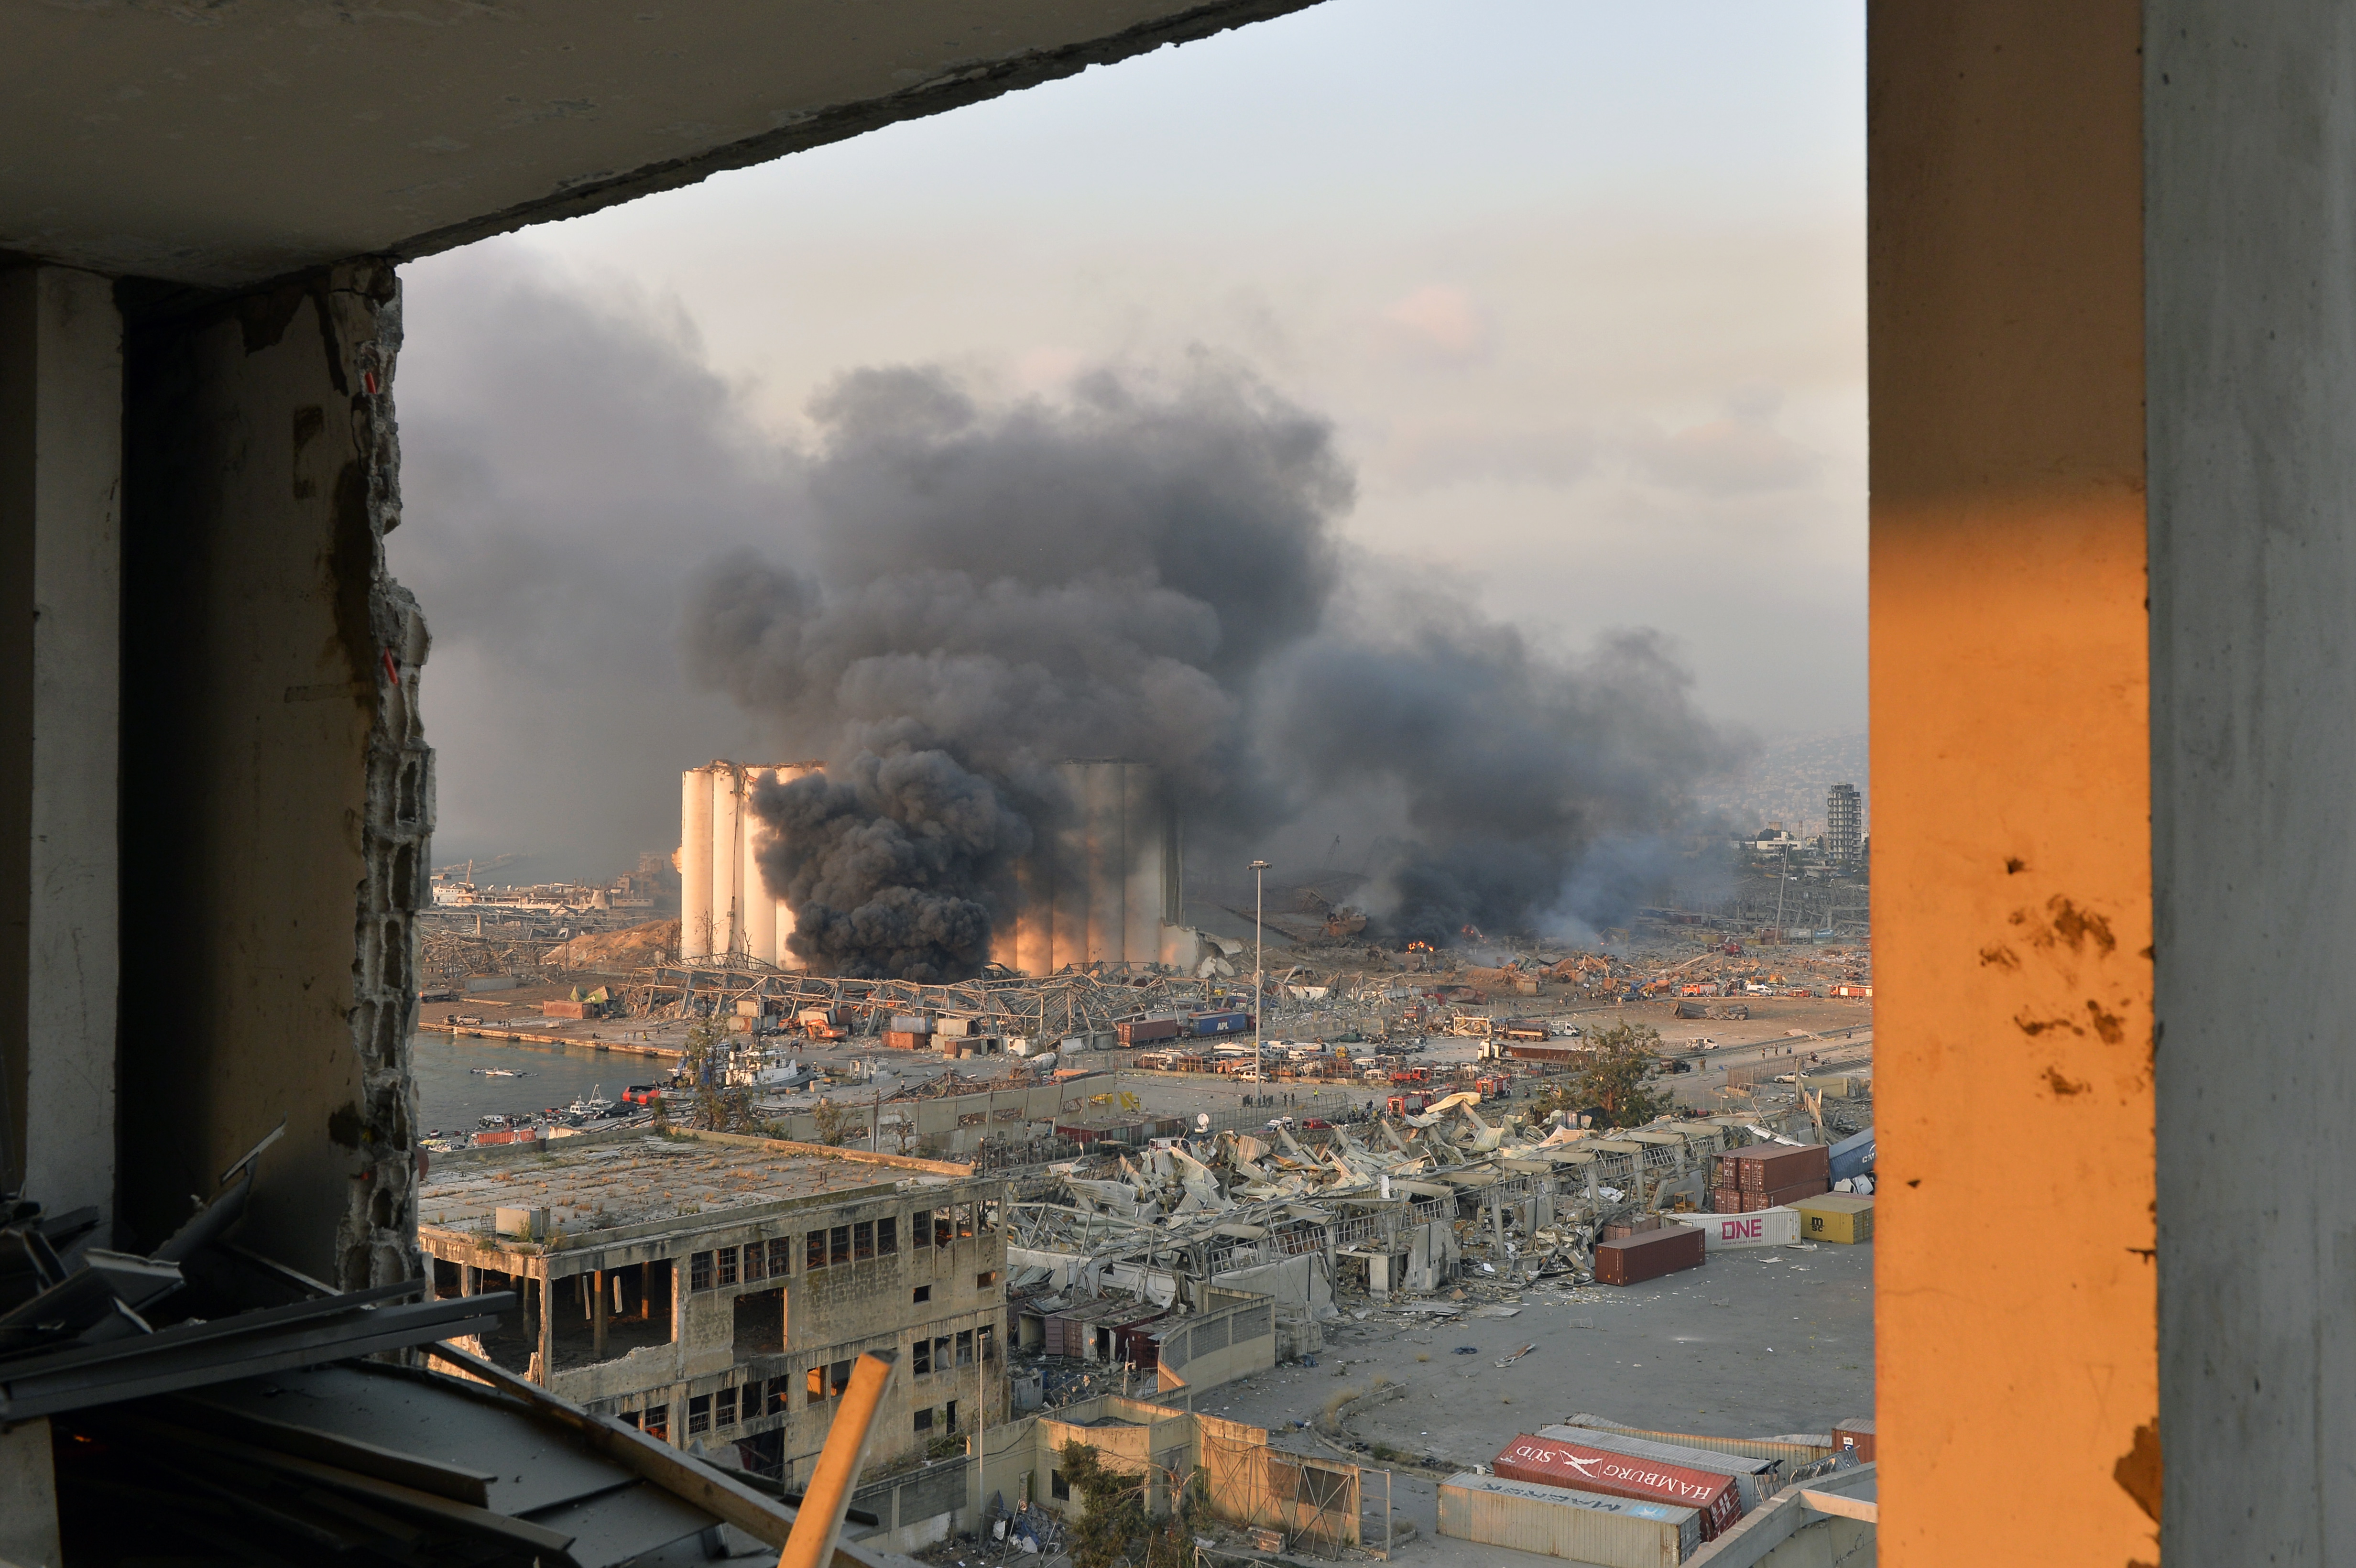 Най-малко 78 души са загинали и повече от 4 000 са ранени при двете експлозии в пристанището на ливанската столица Бейрут. Йорданската сеизмологична обсерватория установи, че мощта на втората експлозия се е равнявала на земетресение с магнитуд 4,5 по Рихтер. Взривили са се 2 750 тона амониев нитрат. Вероятно това е най-голямата неядрена експлозия в историята на човечеството.